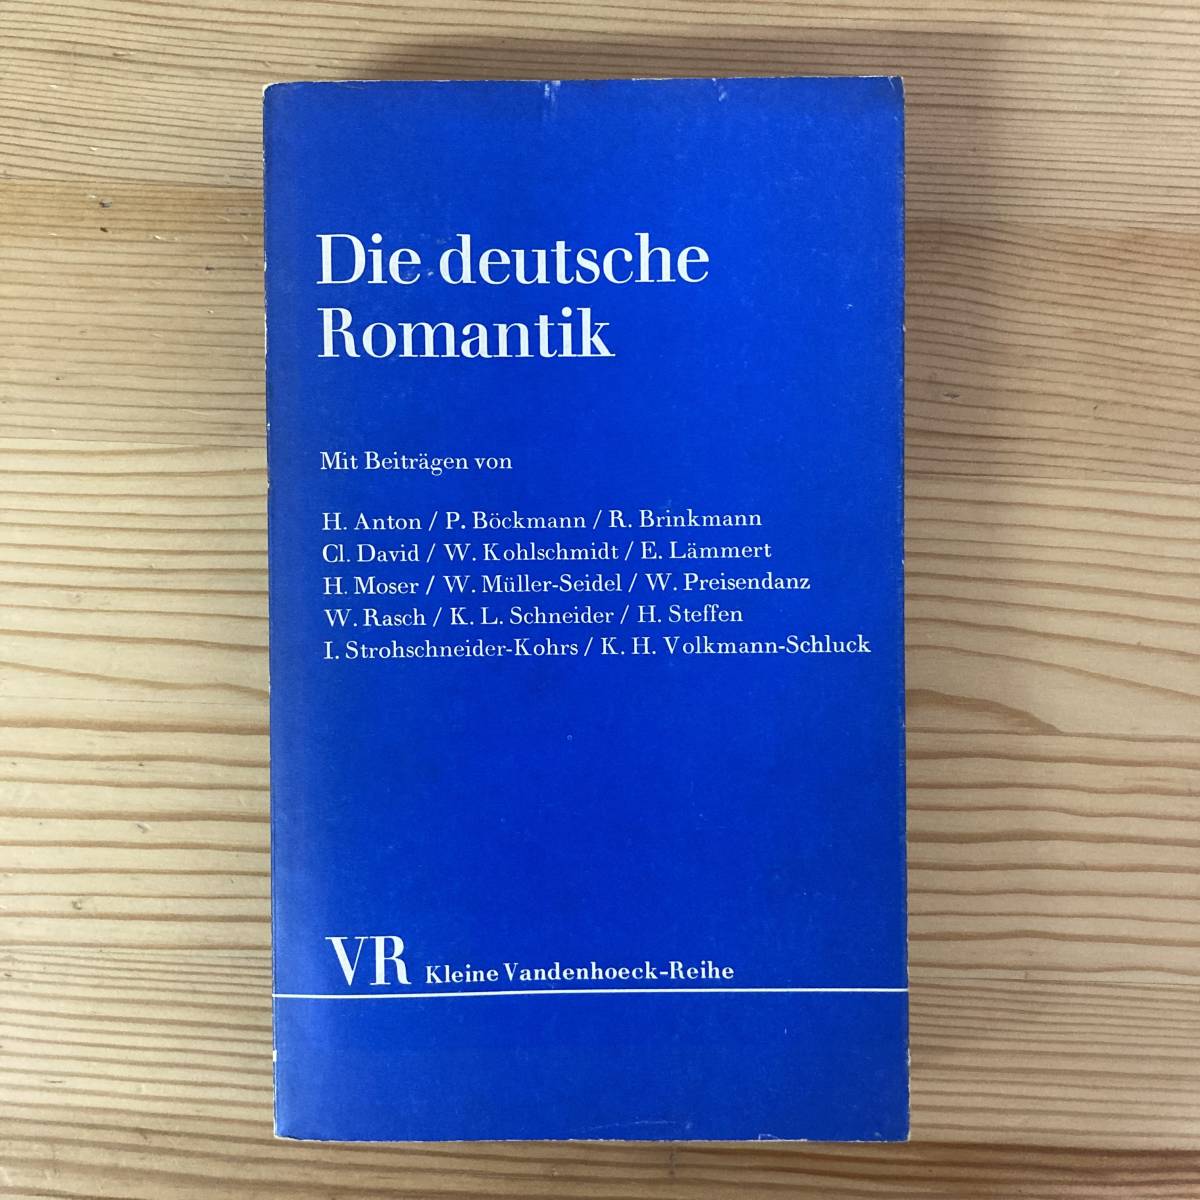 【独語洋書】Die deutsche Romantik: poetik, formen und motive / Hans Steffen（編）【ドイツロマン派】_画像1